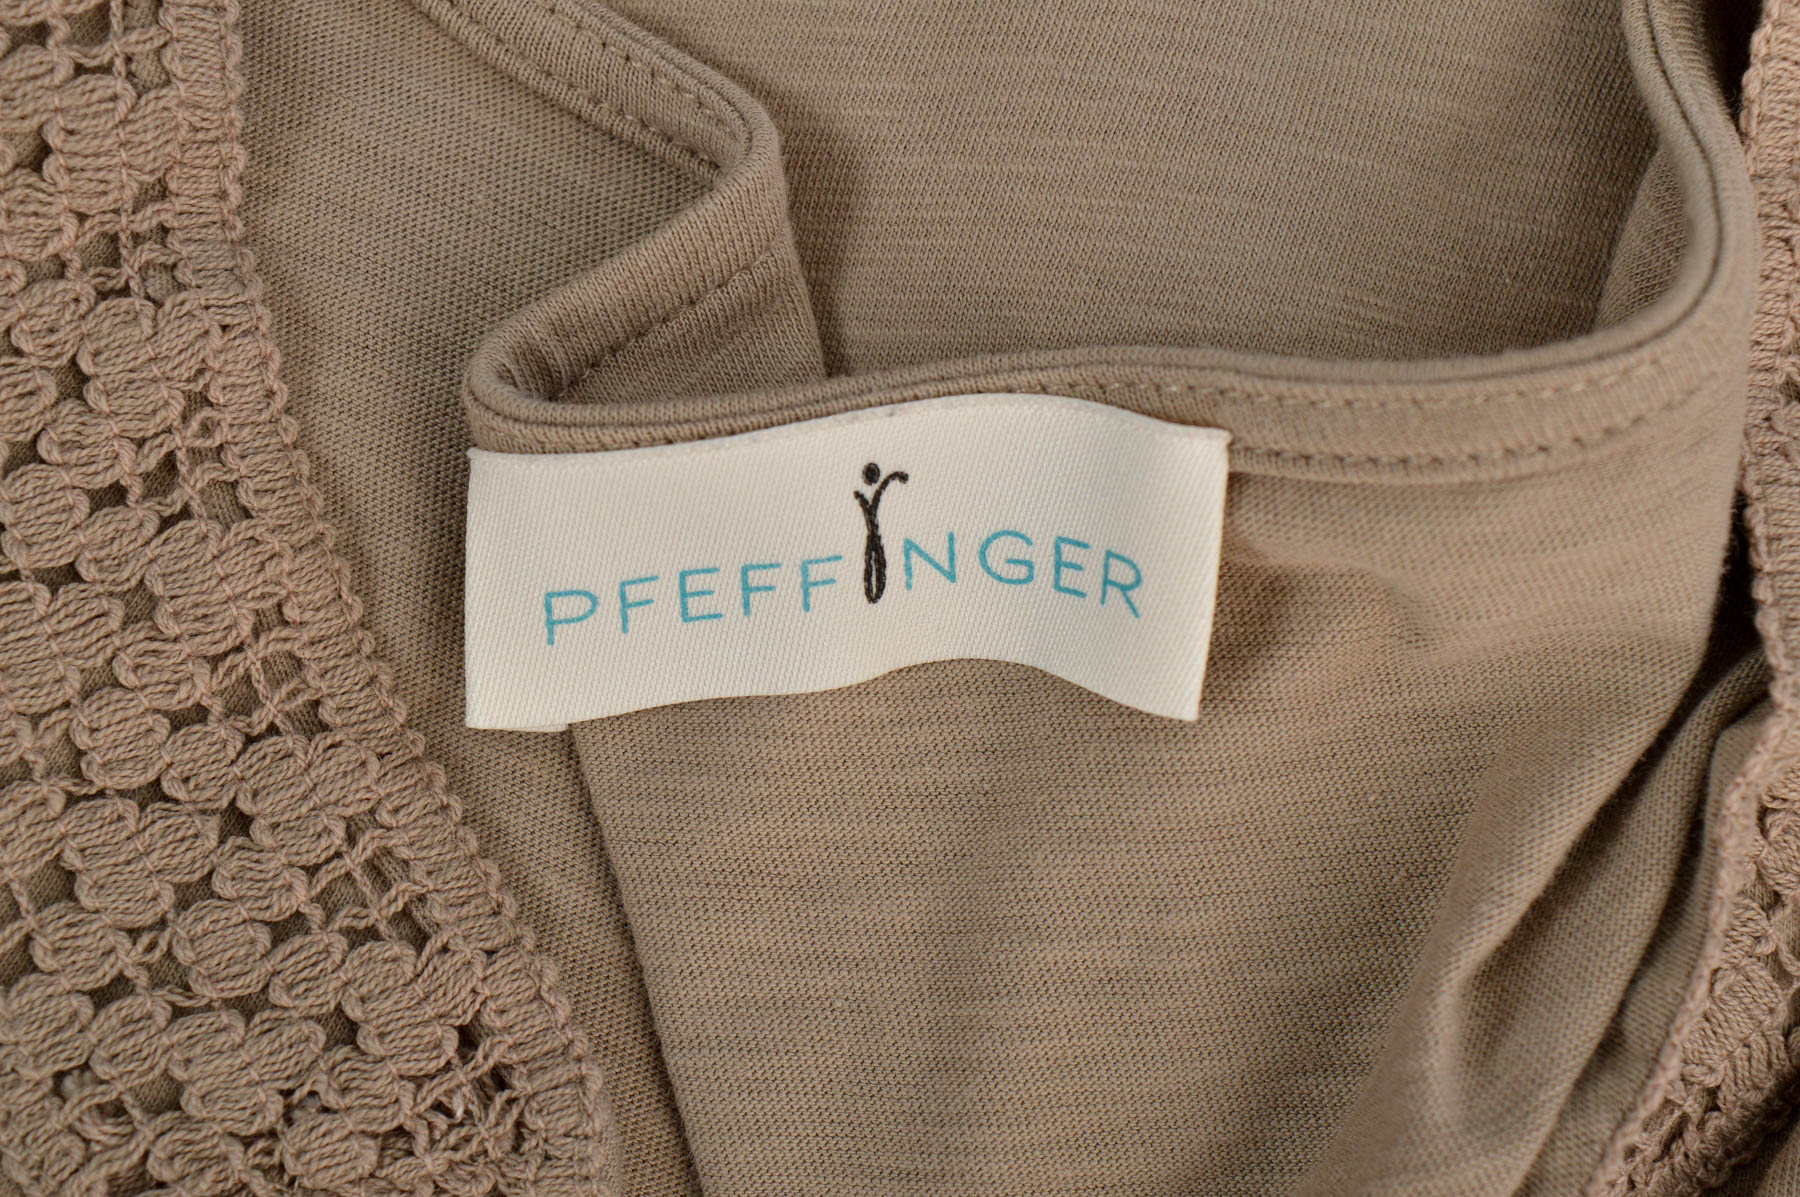 Women's blouse - PFEFFINGER - 2